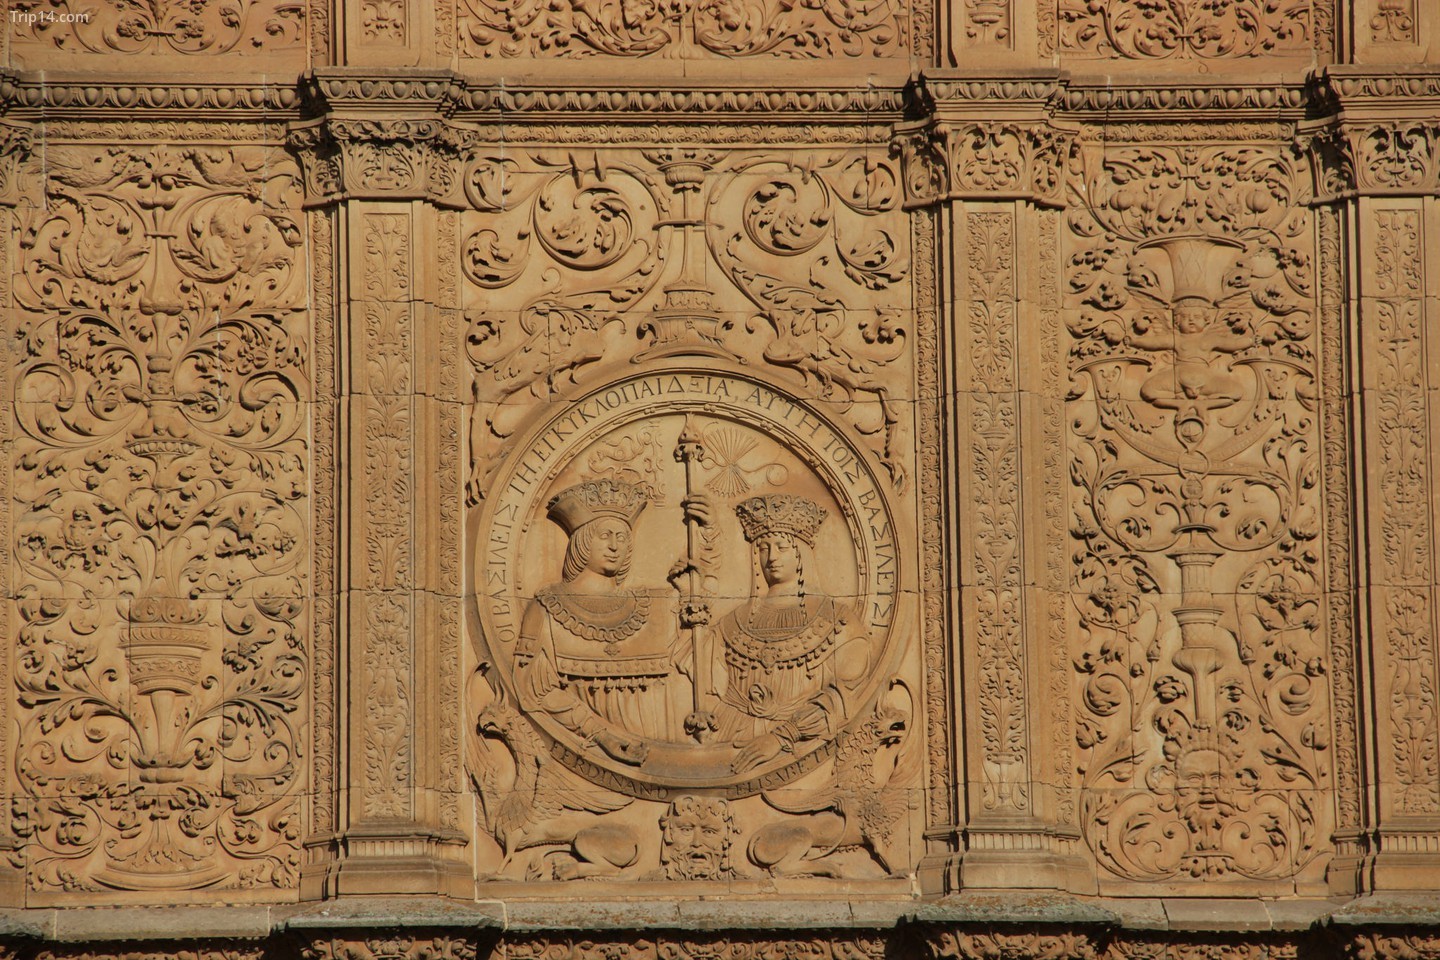  Các bức chạm khắc trên mặt tiền của Đại học Salamanca. Ảnh: Flickr 